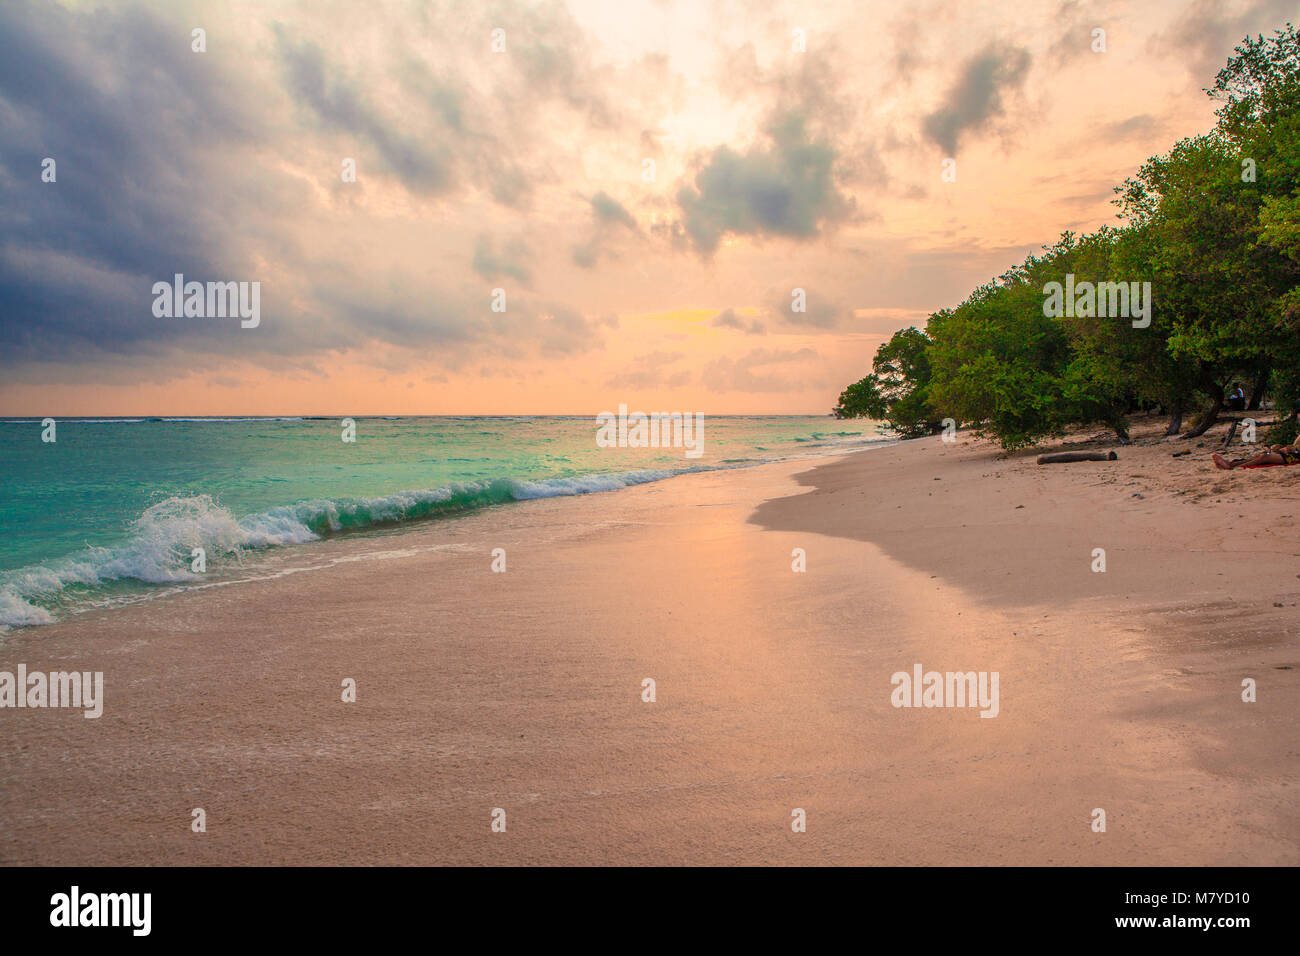 Deserta spiaggia celeste, con acque turchesi e rosa cielo giallo al tramonto, con alberi sulla sabbia vicino al mare Foto Stock